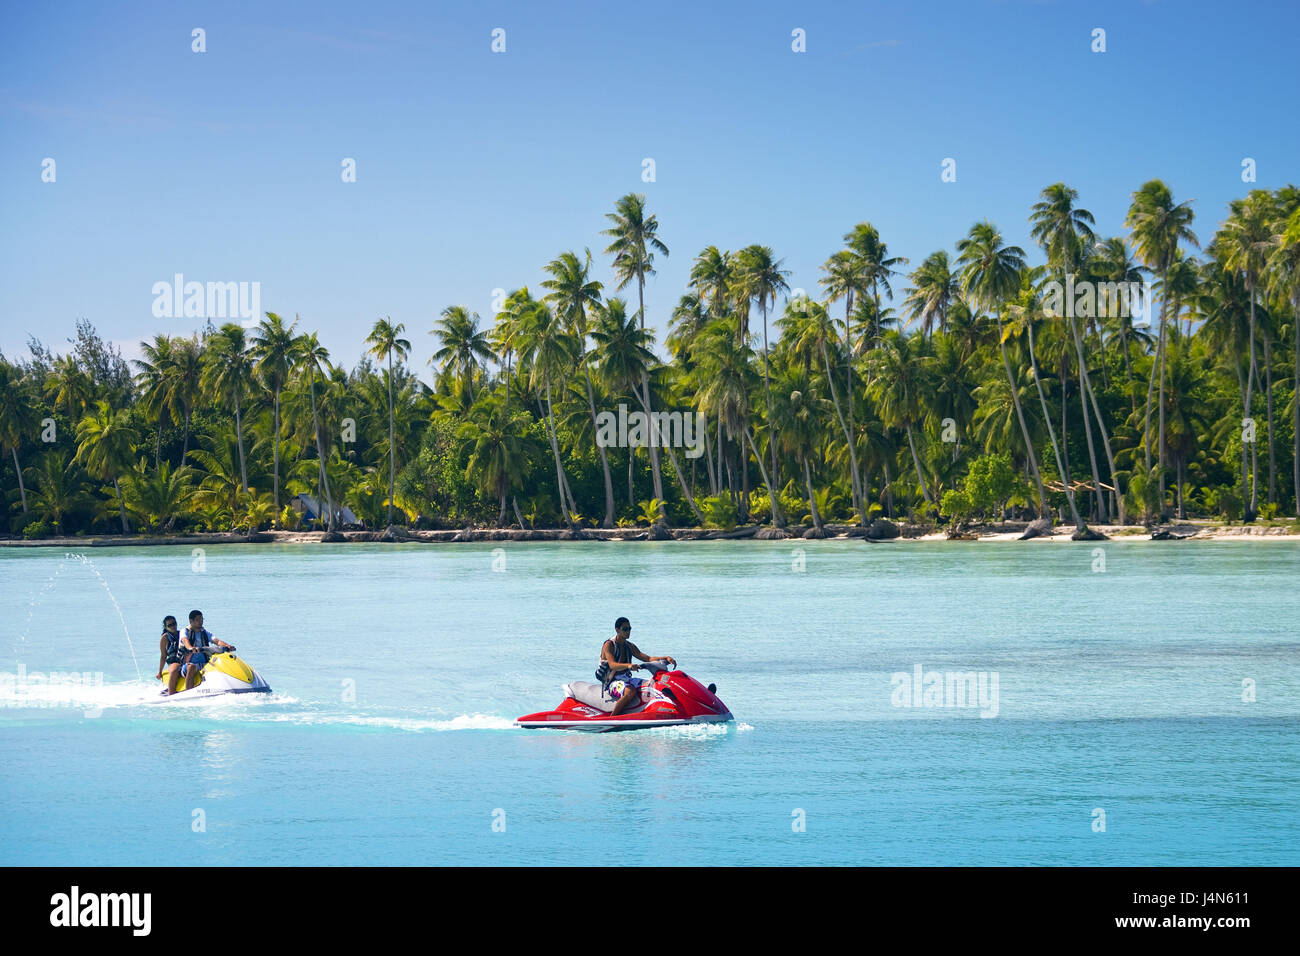 French Polynesia, Bora Bora, bay, jet skier, Stock Photo